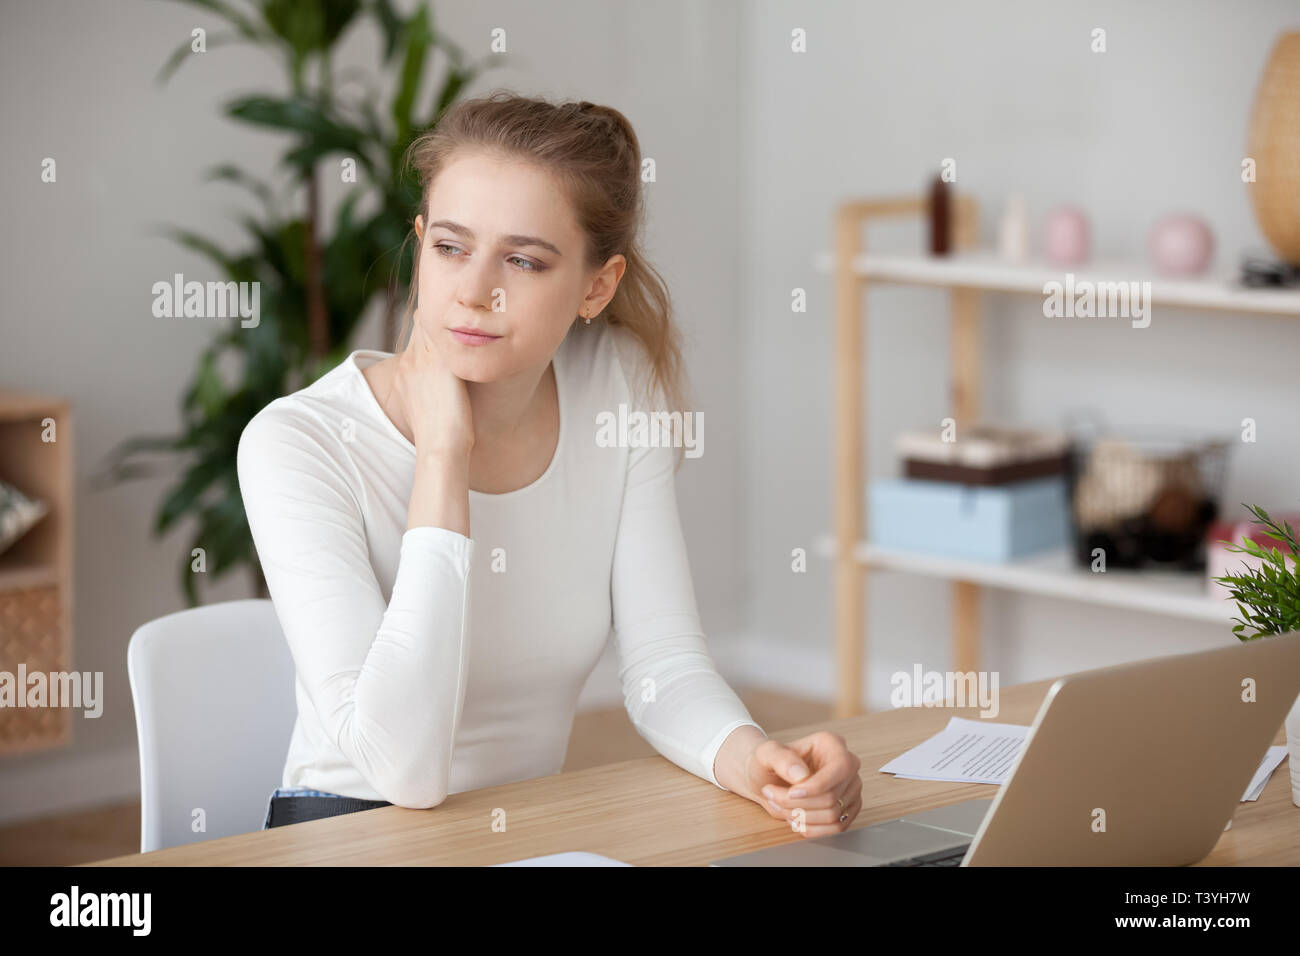 Premurosa donna seduta nella parte anteriore del computer portatile, perso in pensieri Foto Stock